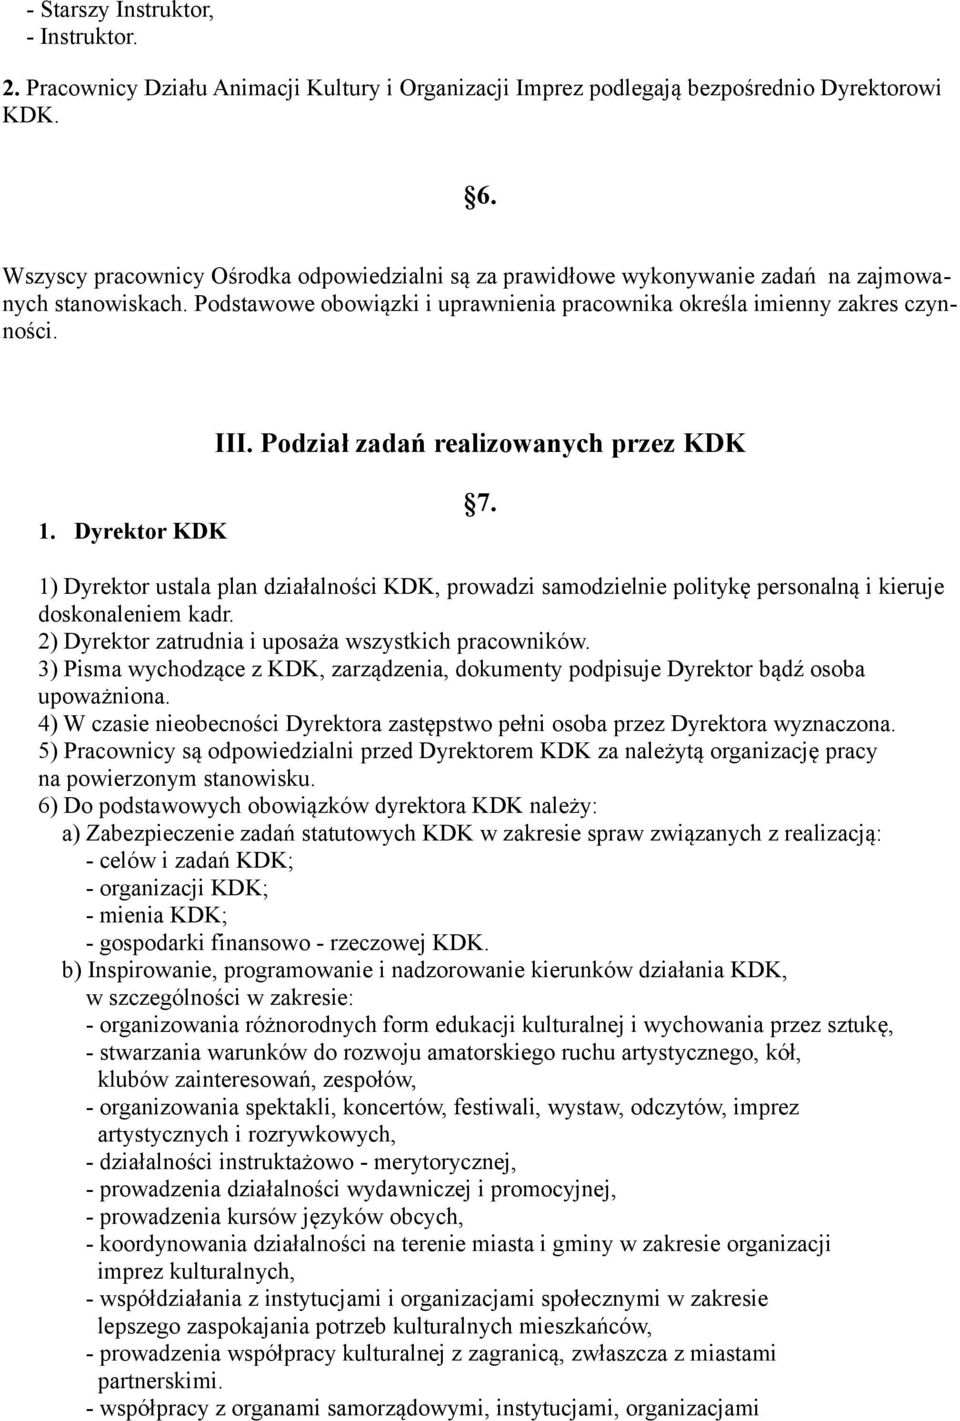 Podział zadań realizowanych przez KDK 1. Dyrektor KDK 7. 1) Dyrektor ustala plan działalności KDK, prowadzi samodzielnie politykę personalną i kieruje doskonaleniem kadr.